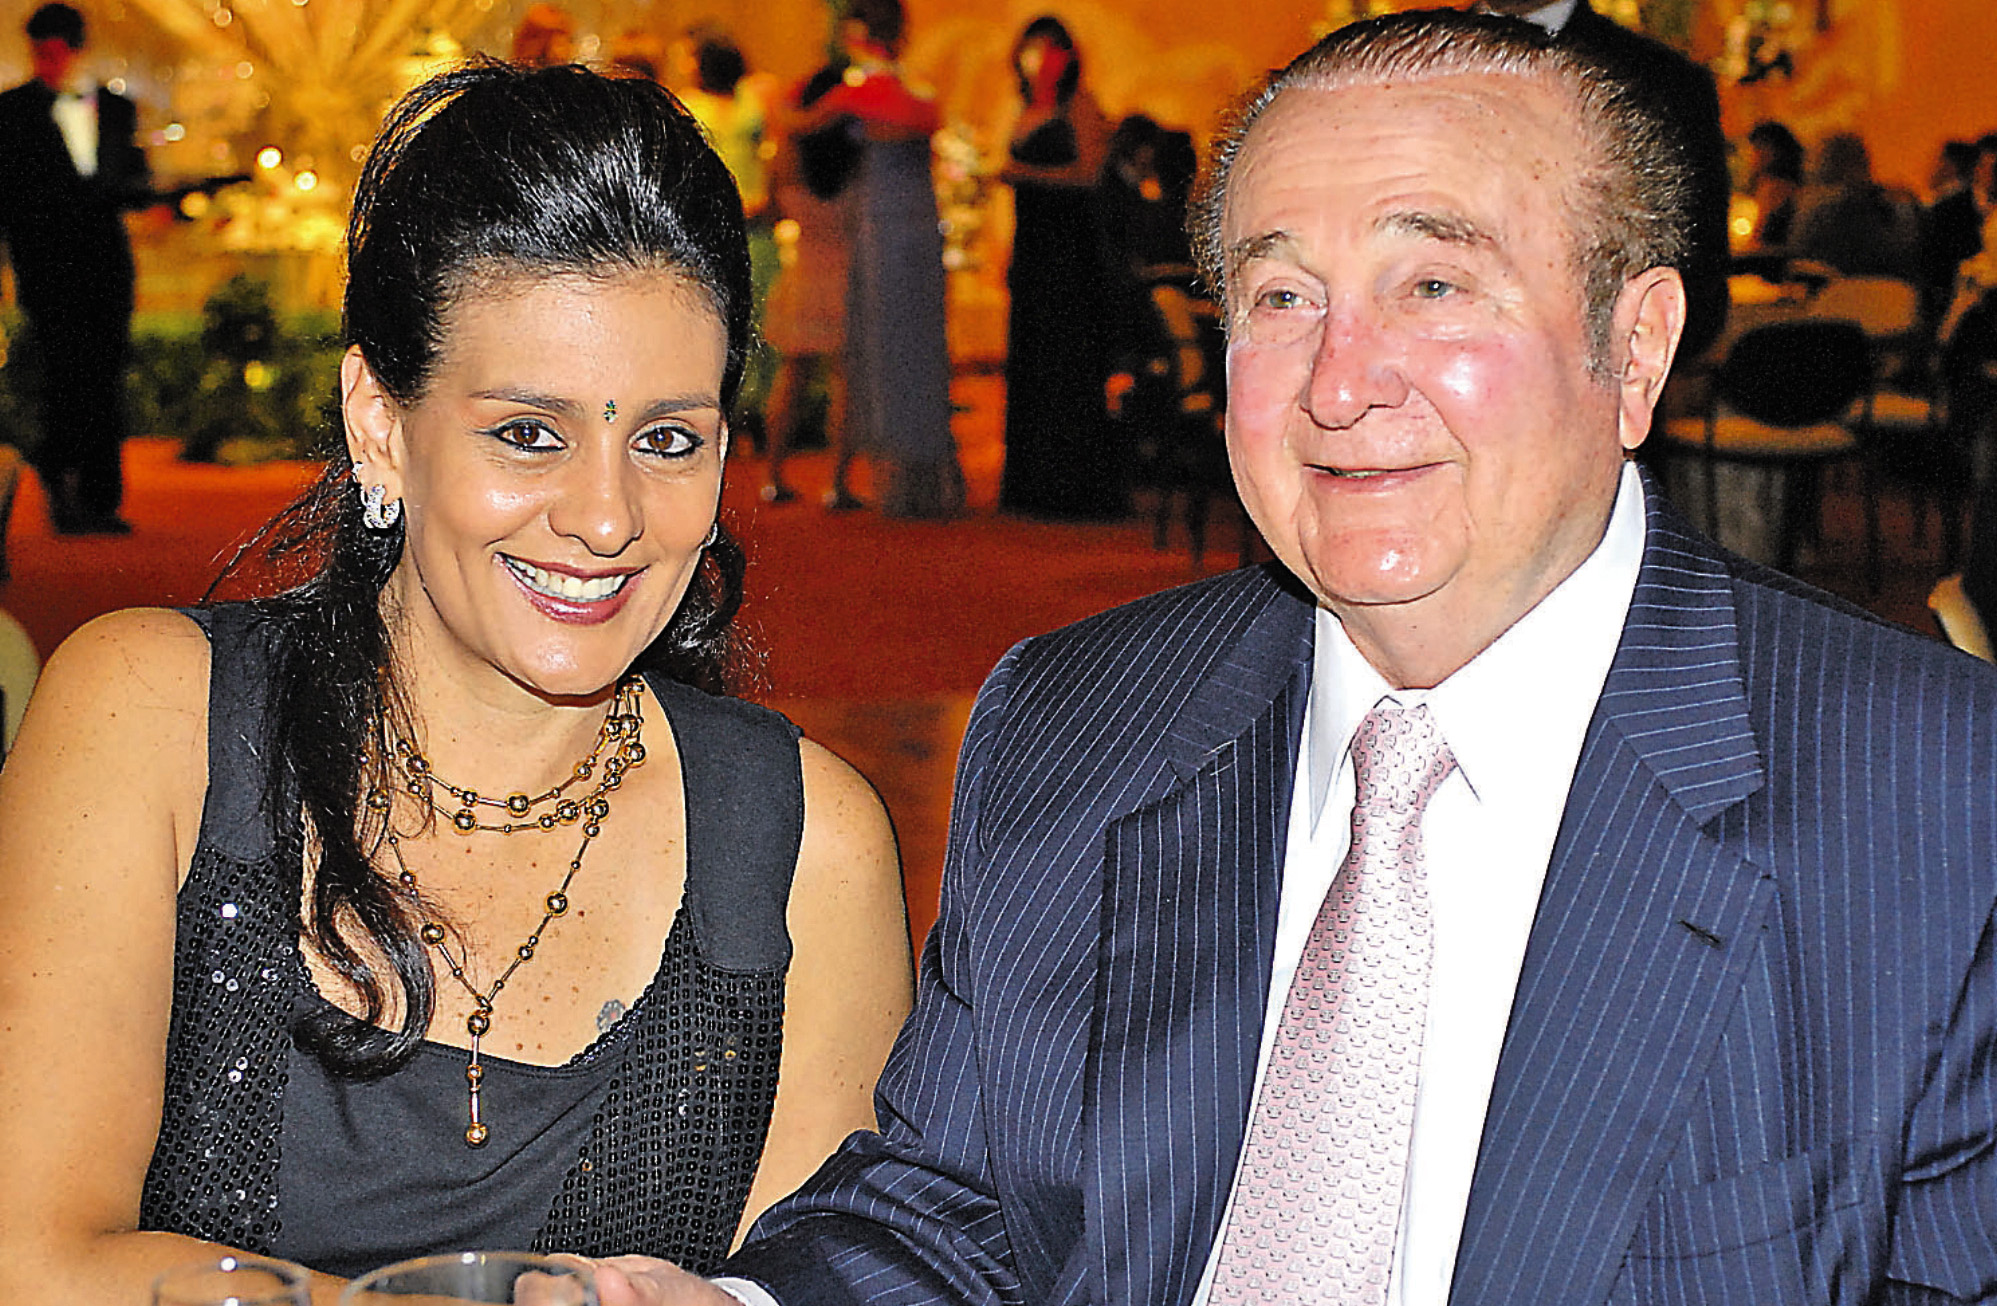 María Clemencia Pérez aparece sentada junto a su fallecido esposo, el expresidente de la Conmebol, Nicolás Leoz Almirón. Ambos recibieron millonarias sumas a sus cuentas personales desde la cuenta bancaria de la Conmebol.